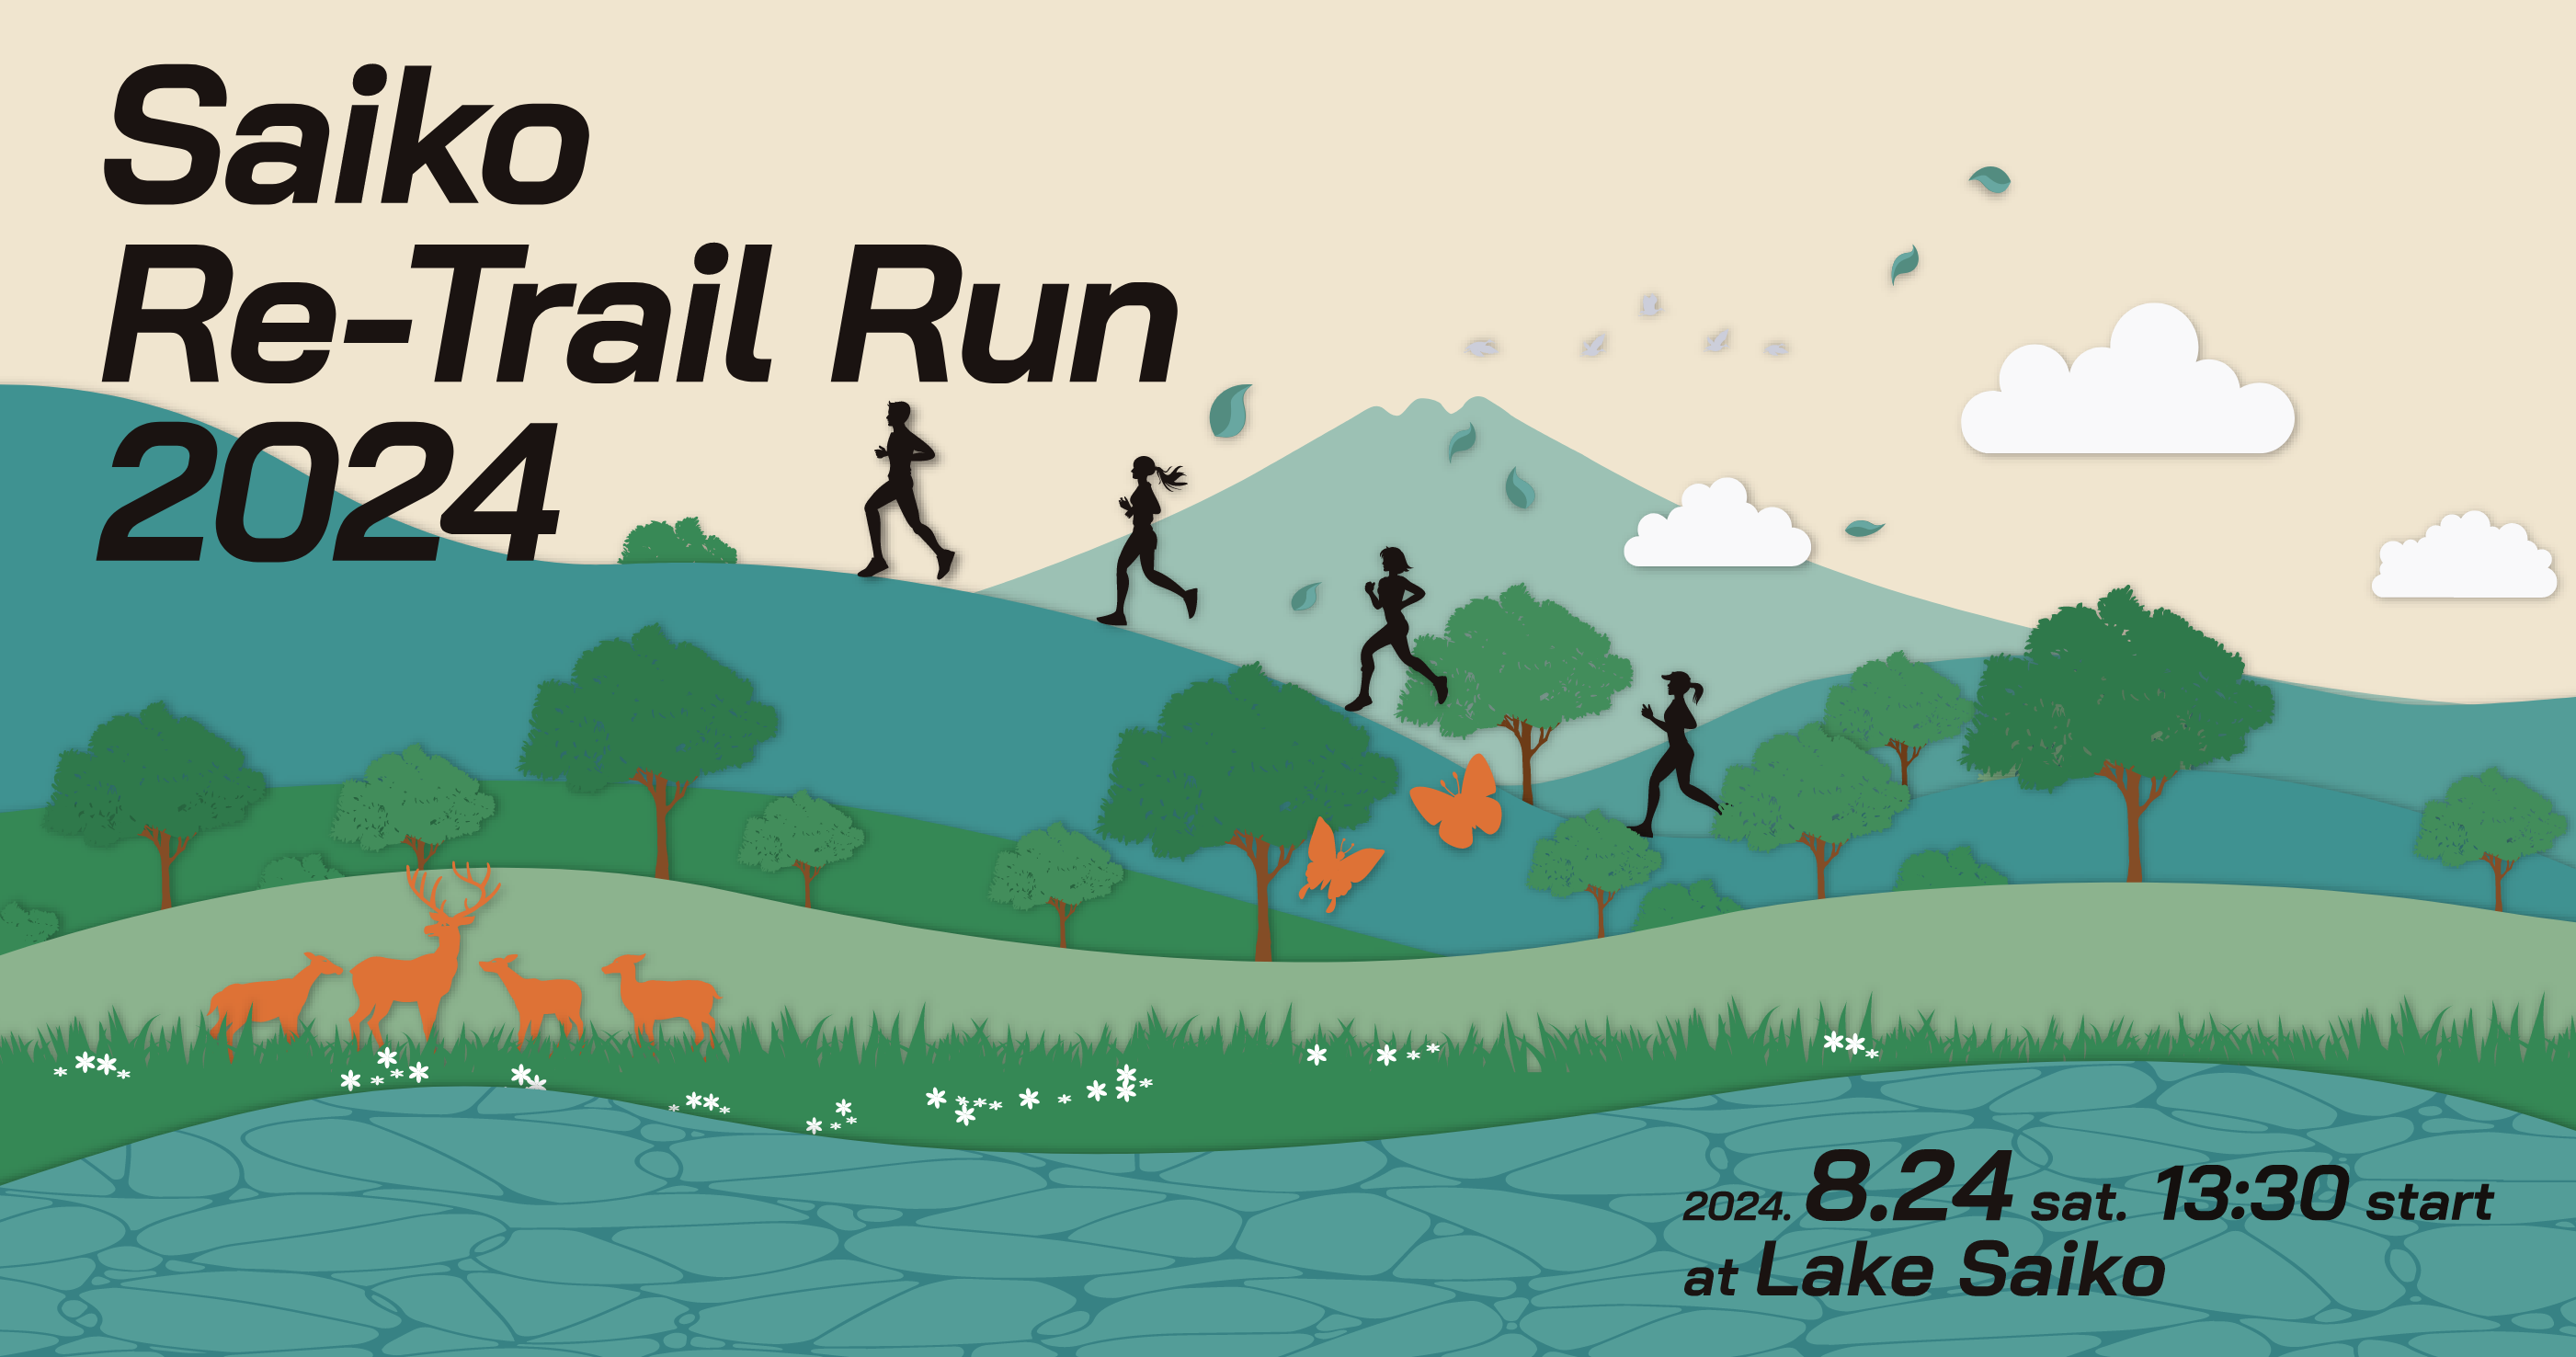 Saiko Re-Trail Run 2024 2024.8.24. sat.13:30 start at Lake Saiko